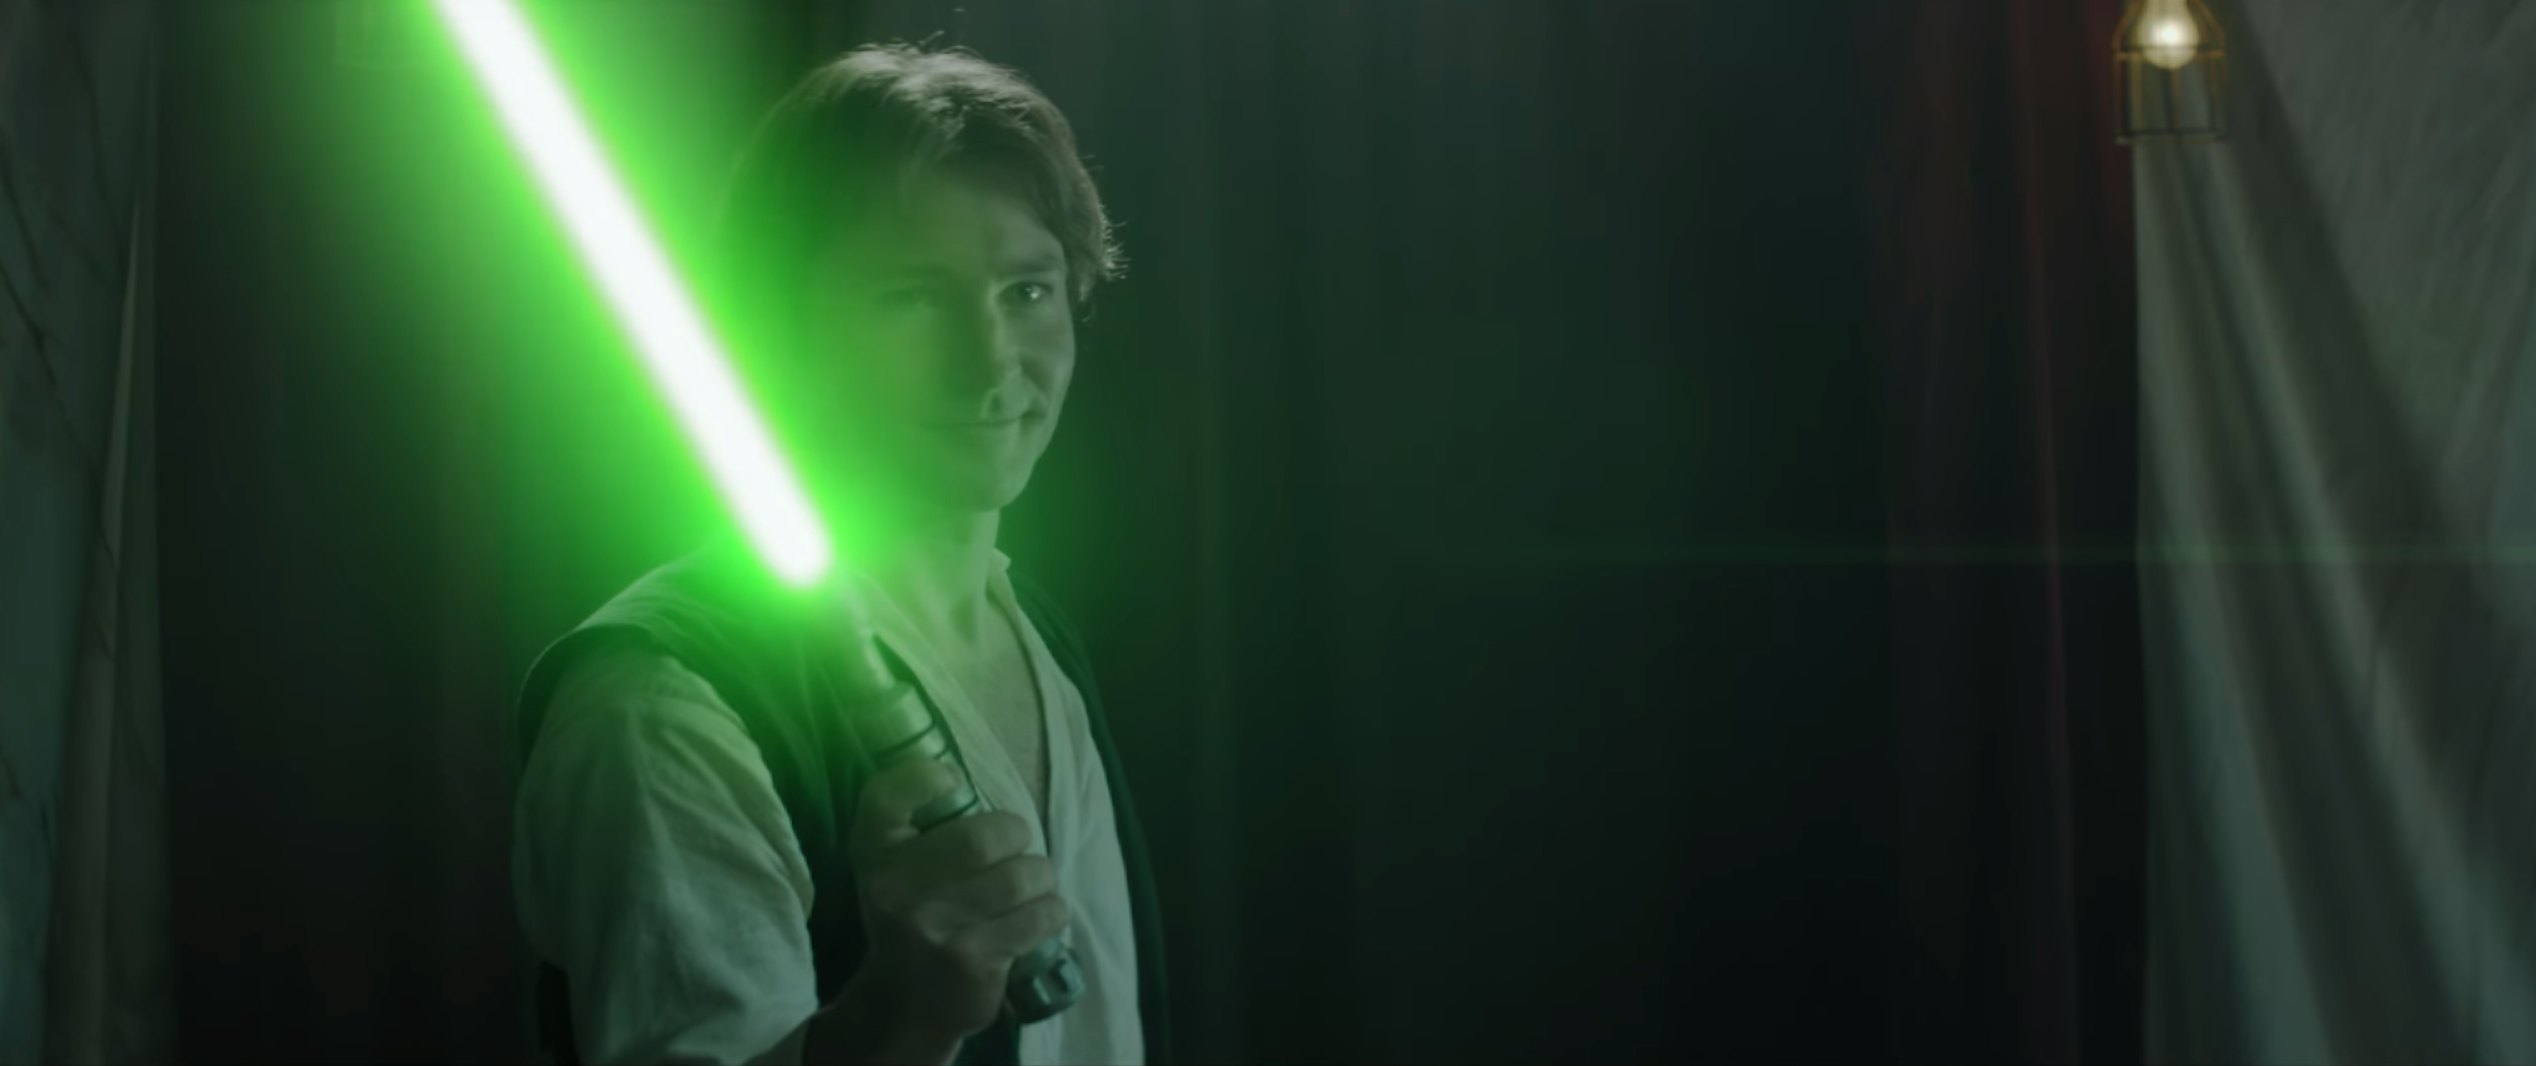 Star Wars' Fan Film Gives Han Solo His 